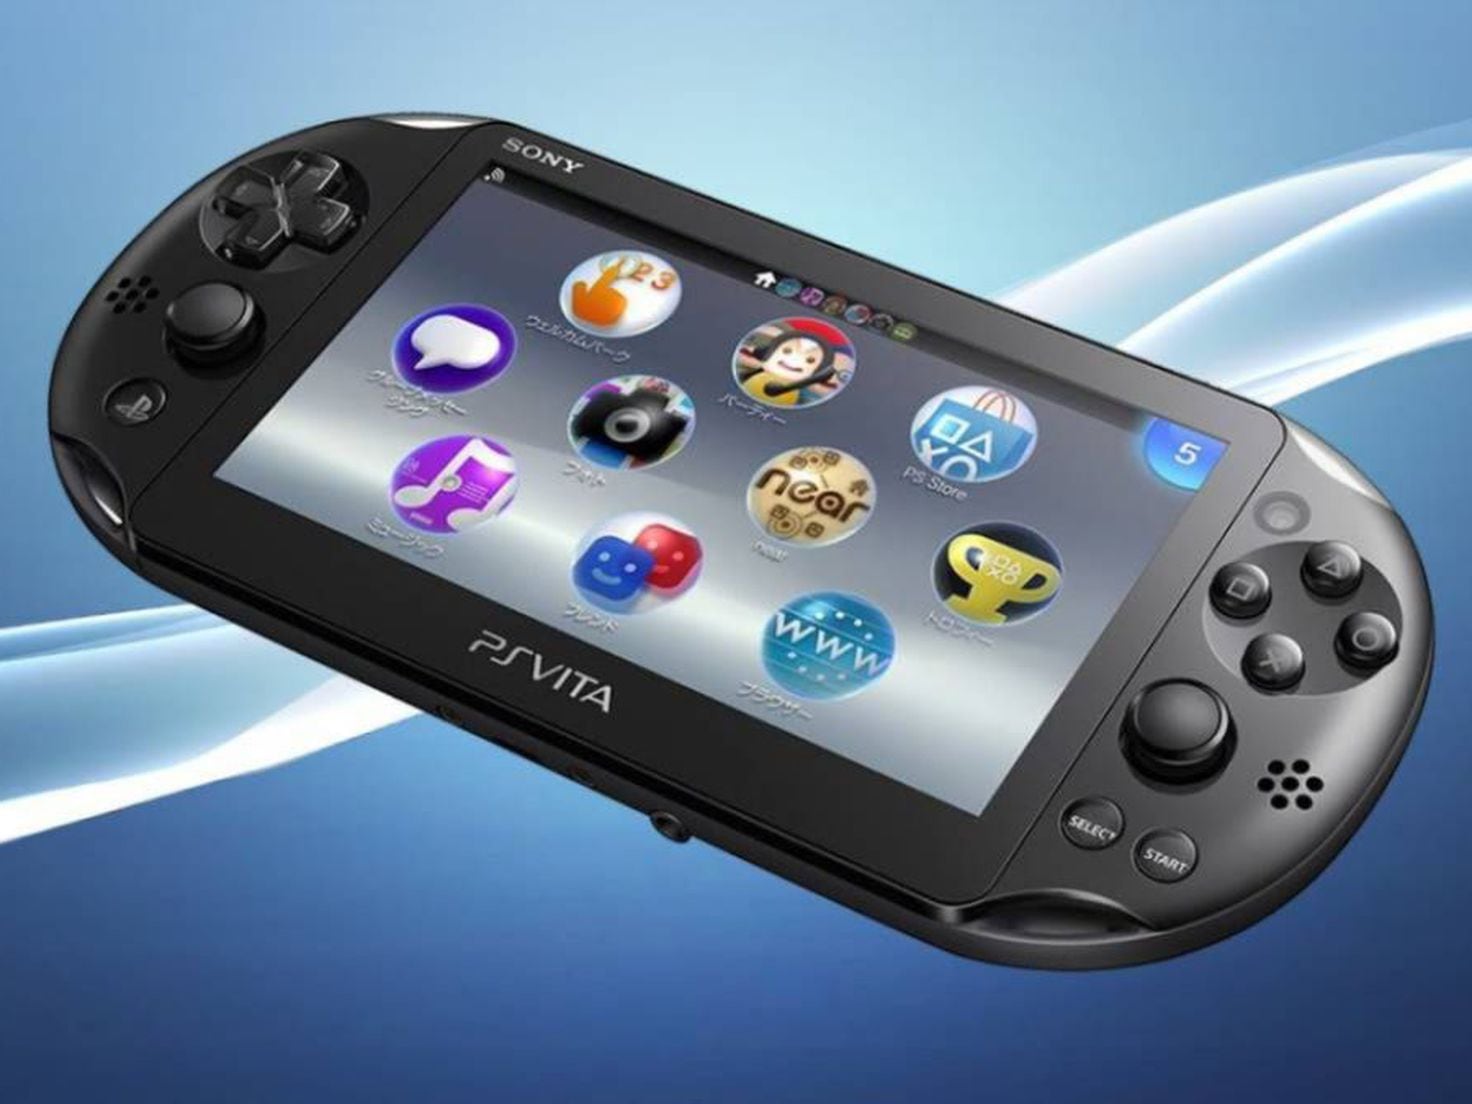 PS Vita  Sony cierra la app Mensajes; se acabaron los chats e invitaciones  - Meristation